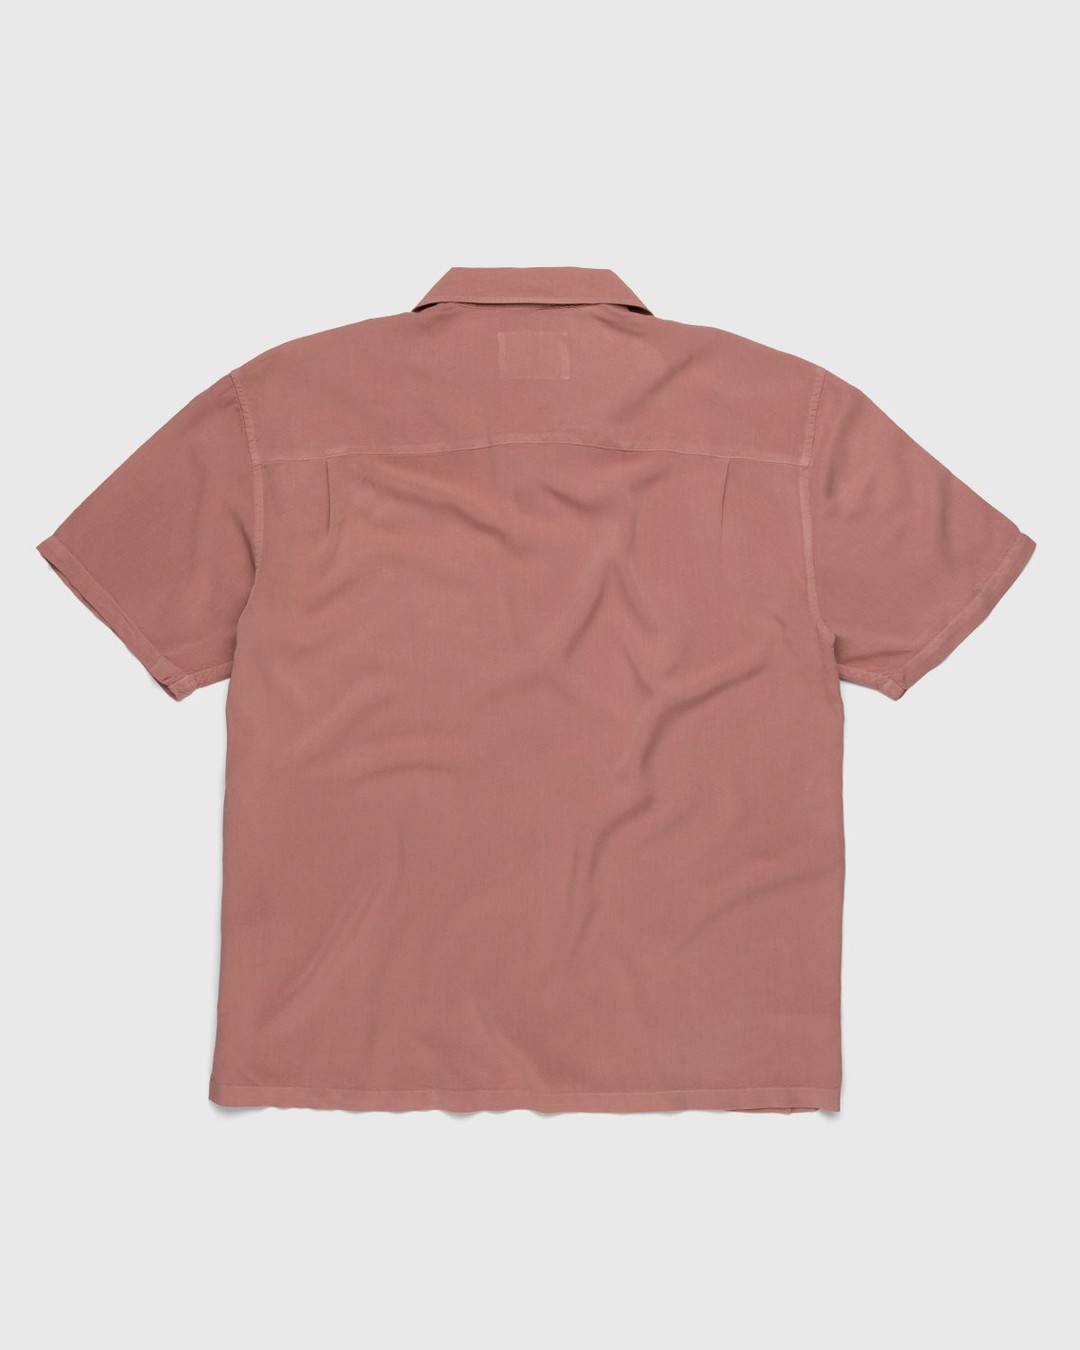 Highsnobiety – Bowling Shirt Mauve - Shortsleeve Shirts - Pink - Image 2